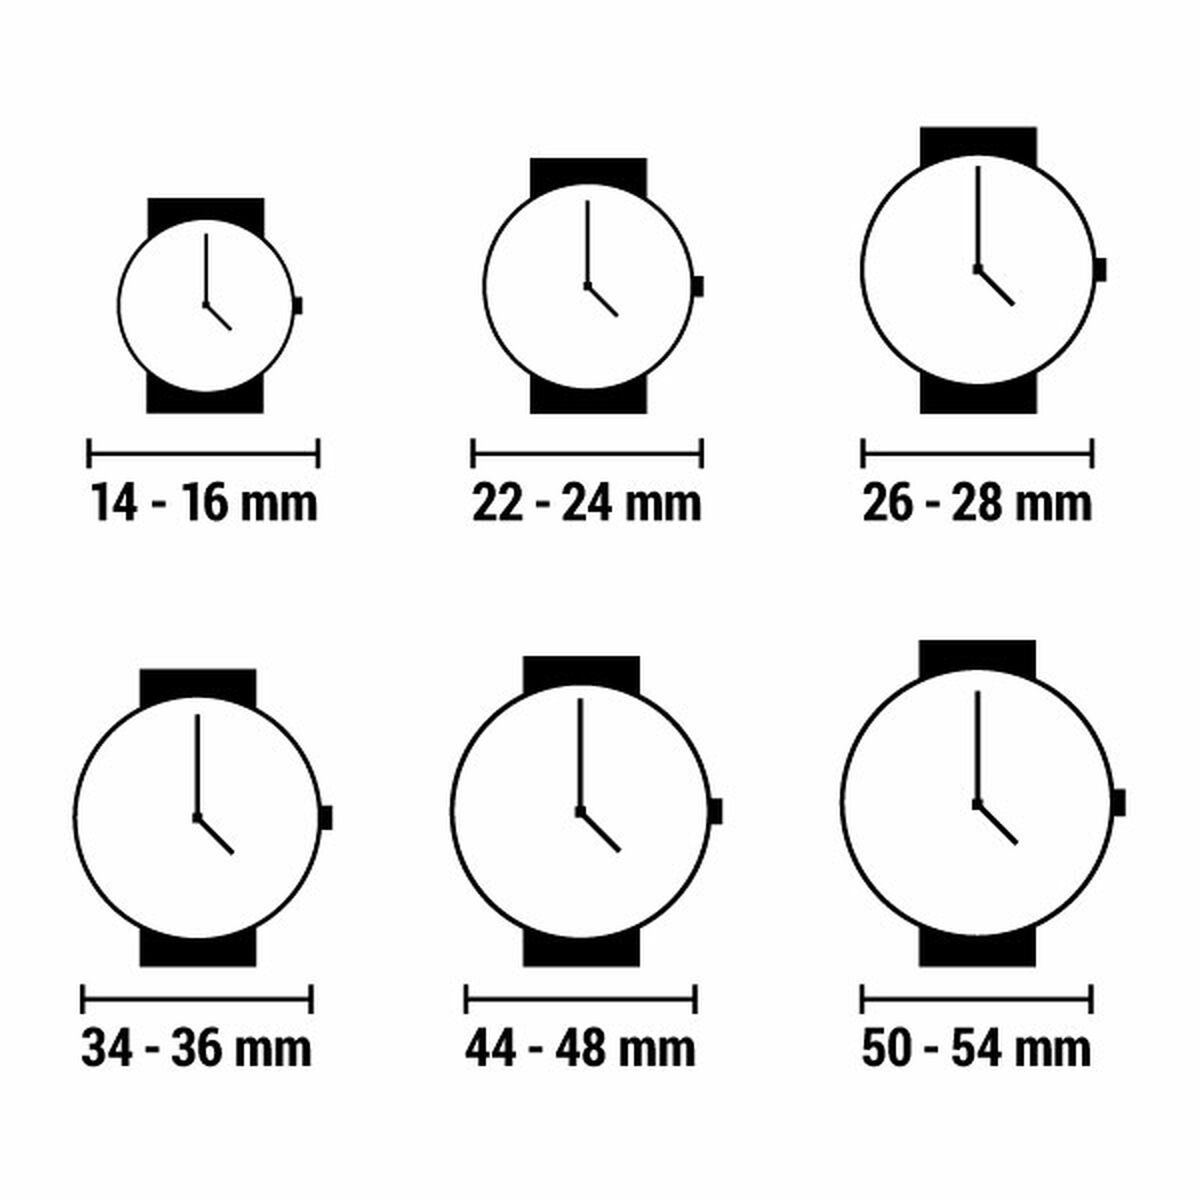 Horloge Dames Q&Q (Ø 33 mm)